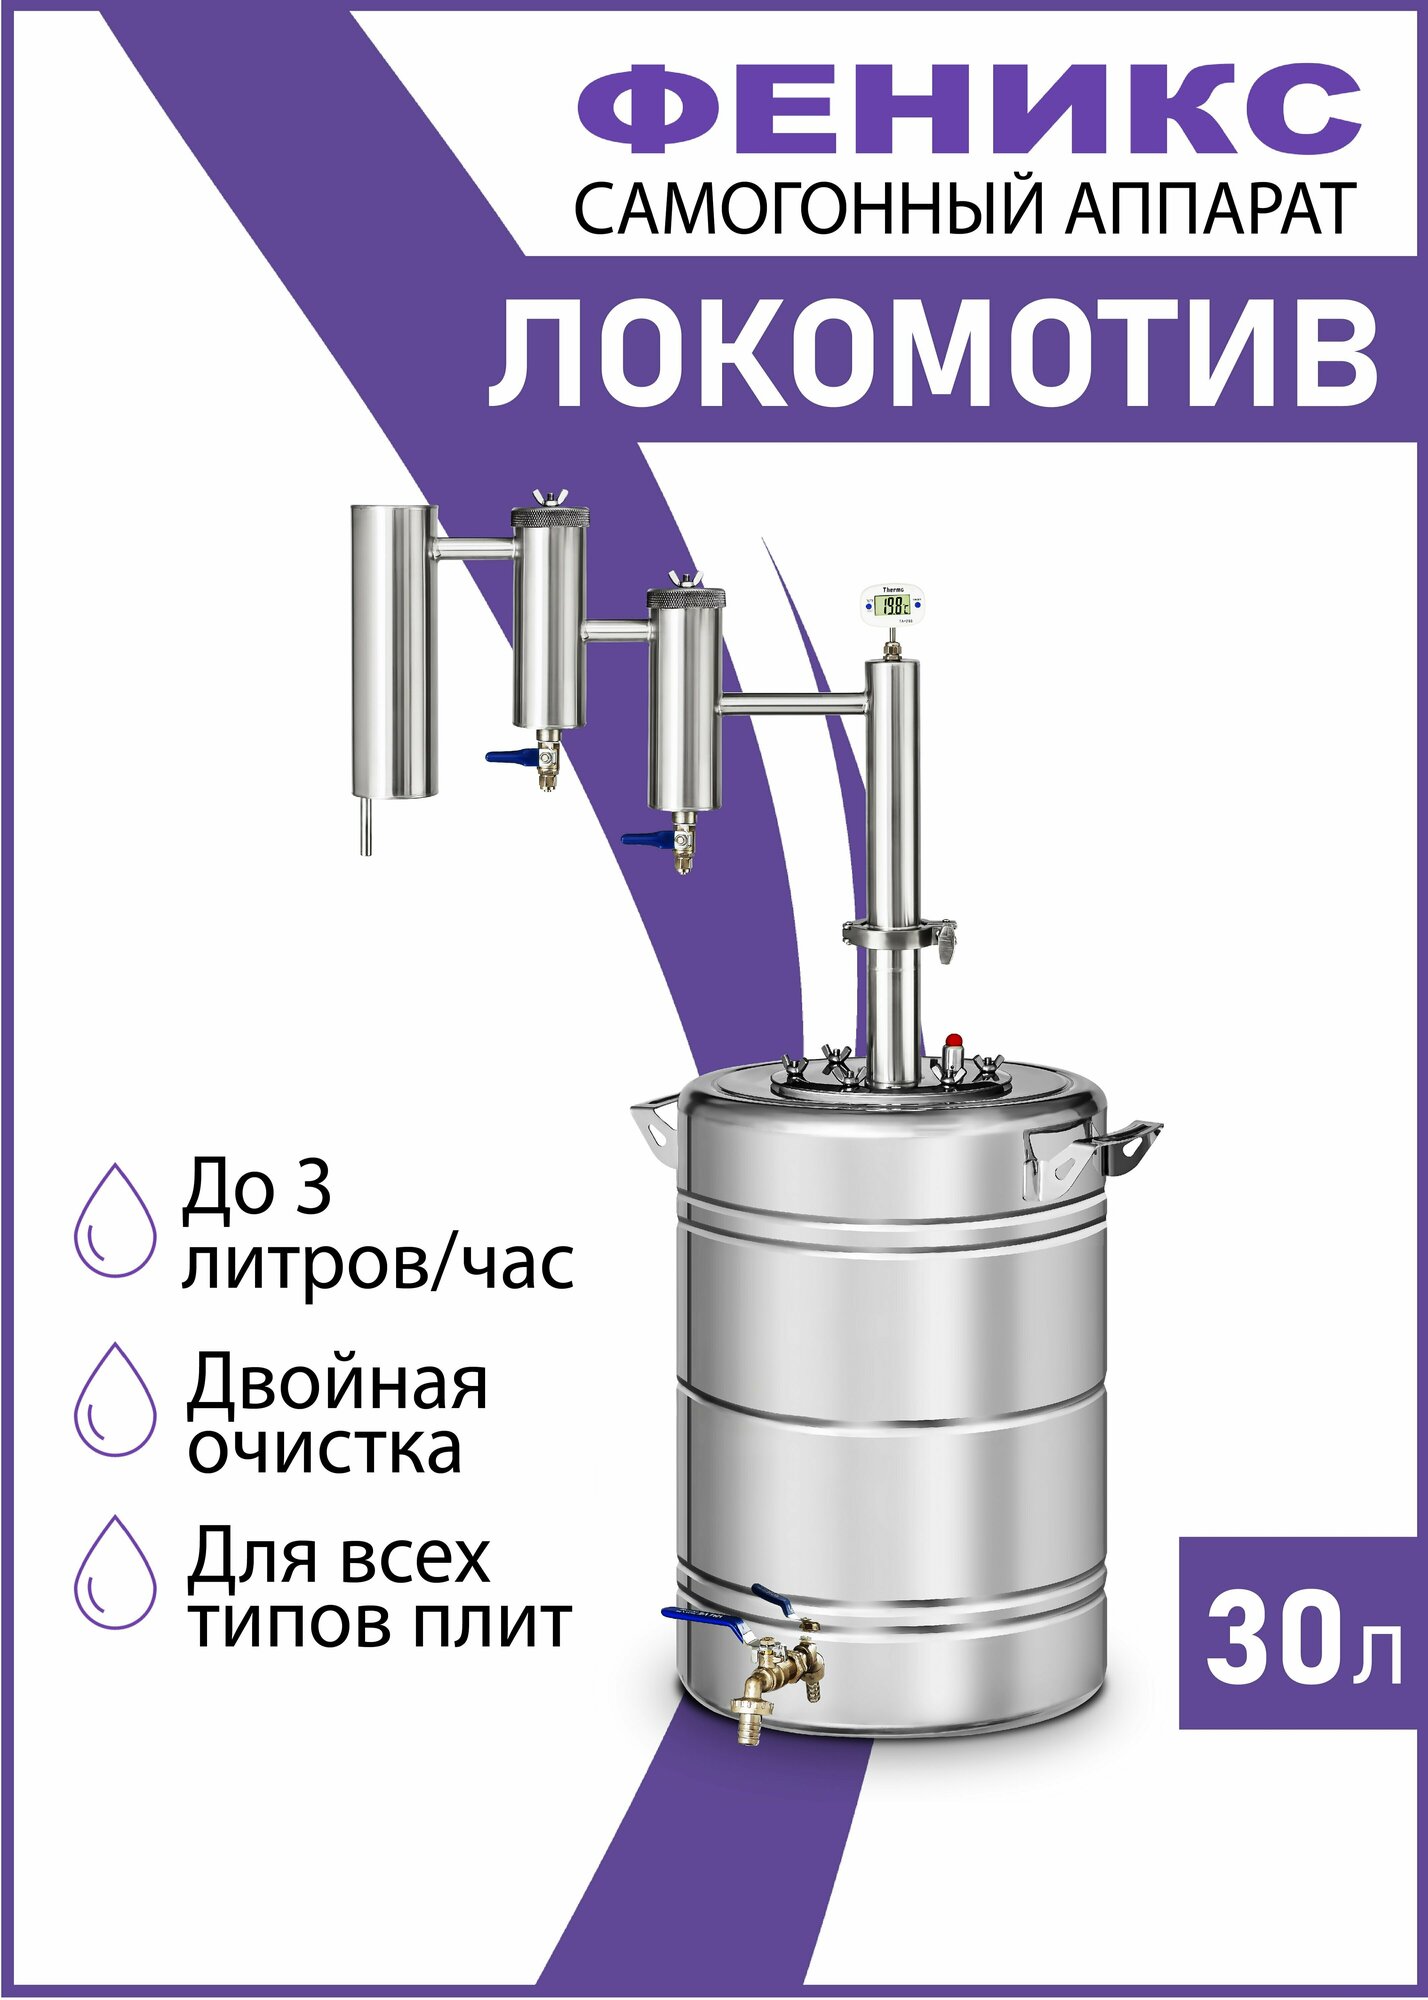 Локомотив - самогонный аппарат с двумя сухопарниками, 30 литров, дистиллятор для самогона